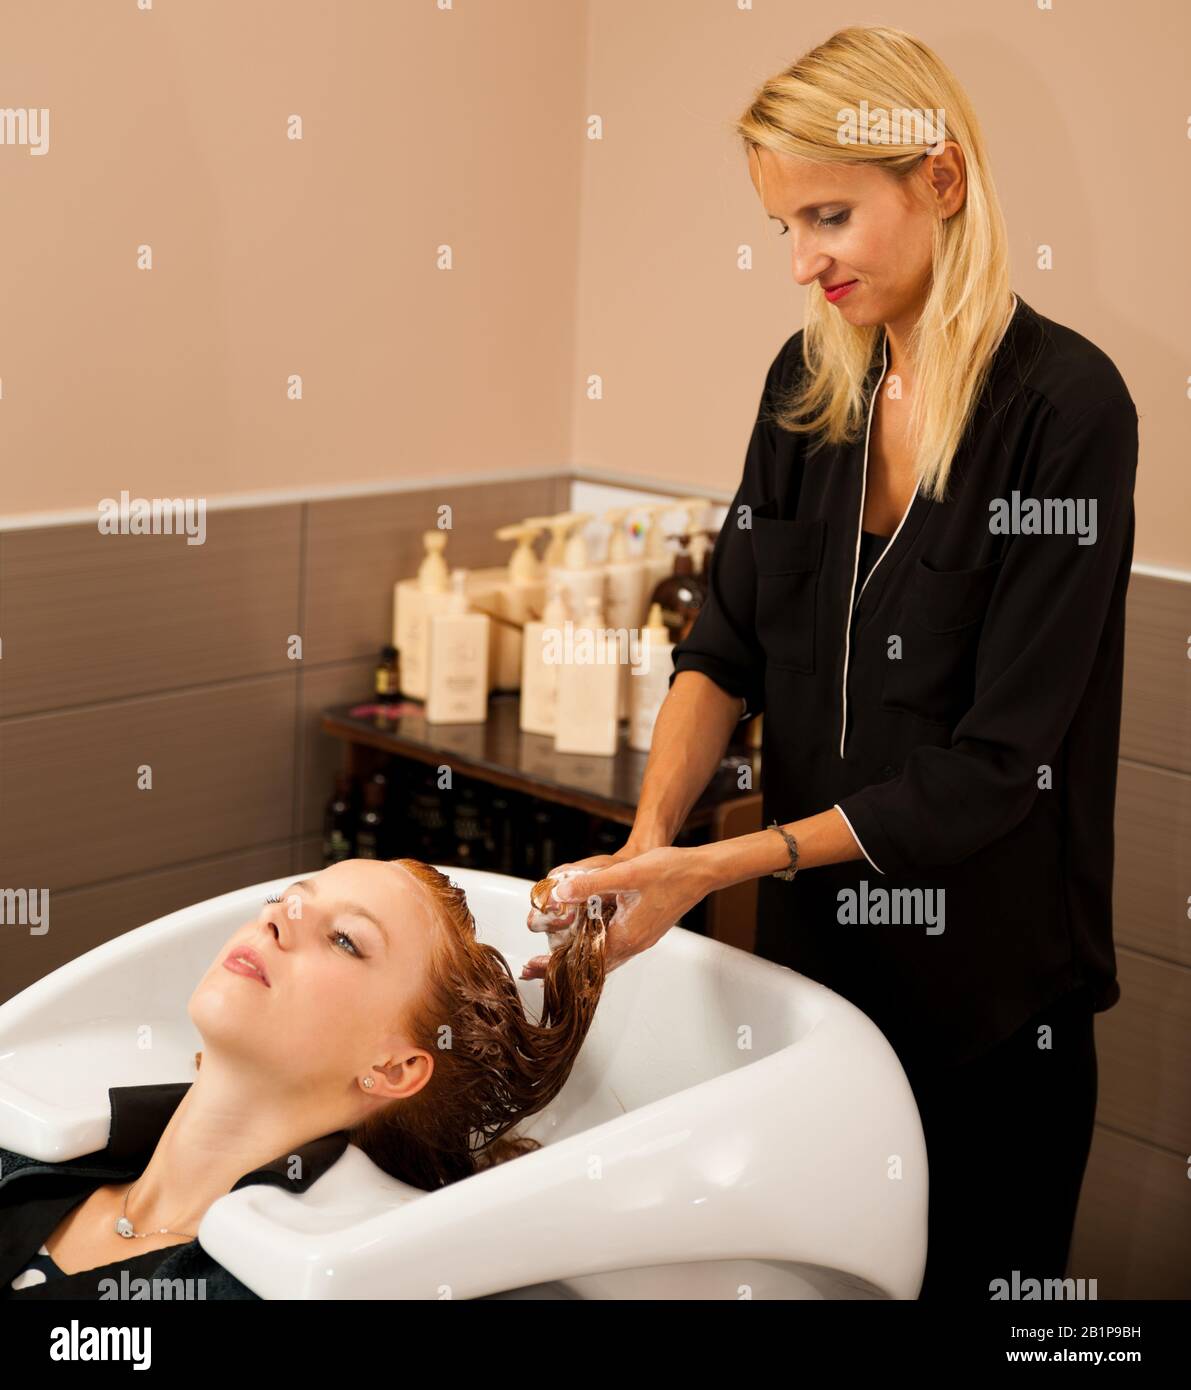 Friseur am Arbeitsplatz - Friseur waschen Haare an den Kunden zuvor Frisur Stockfoto